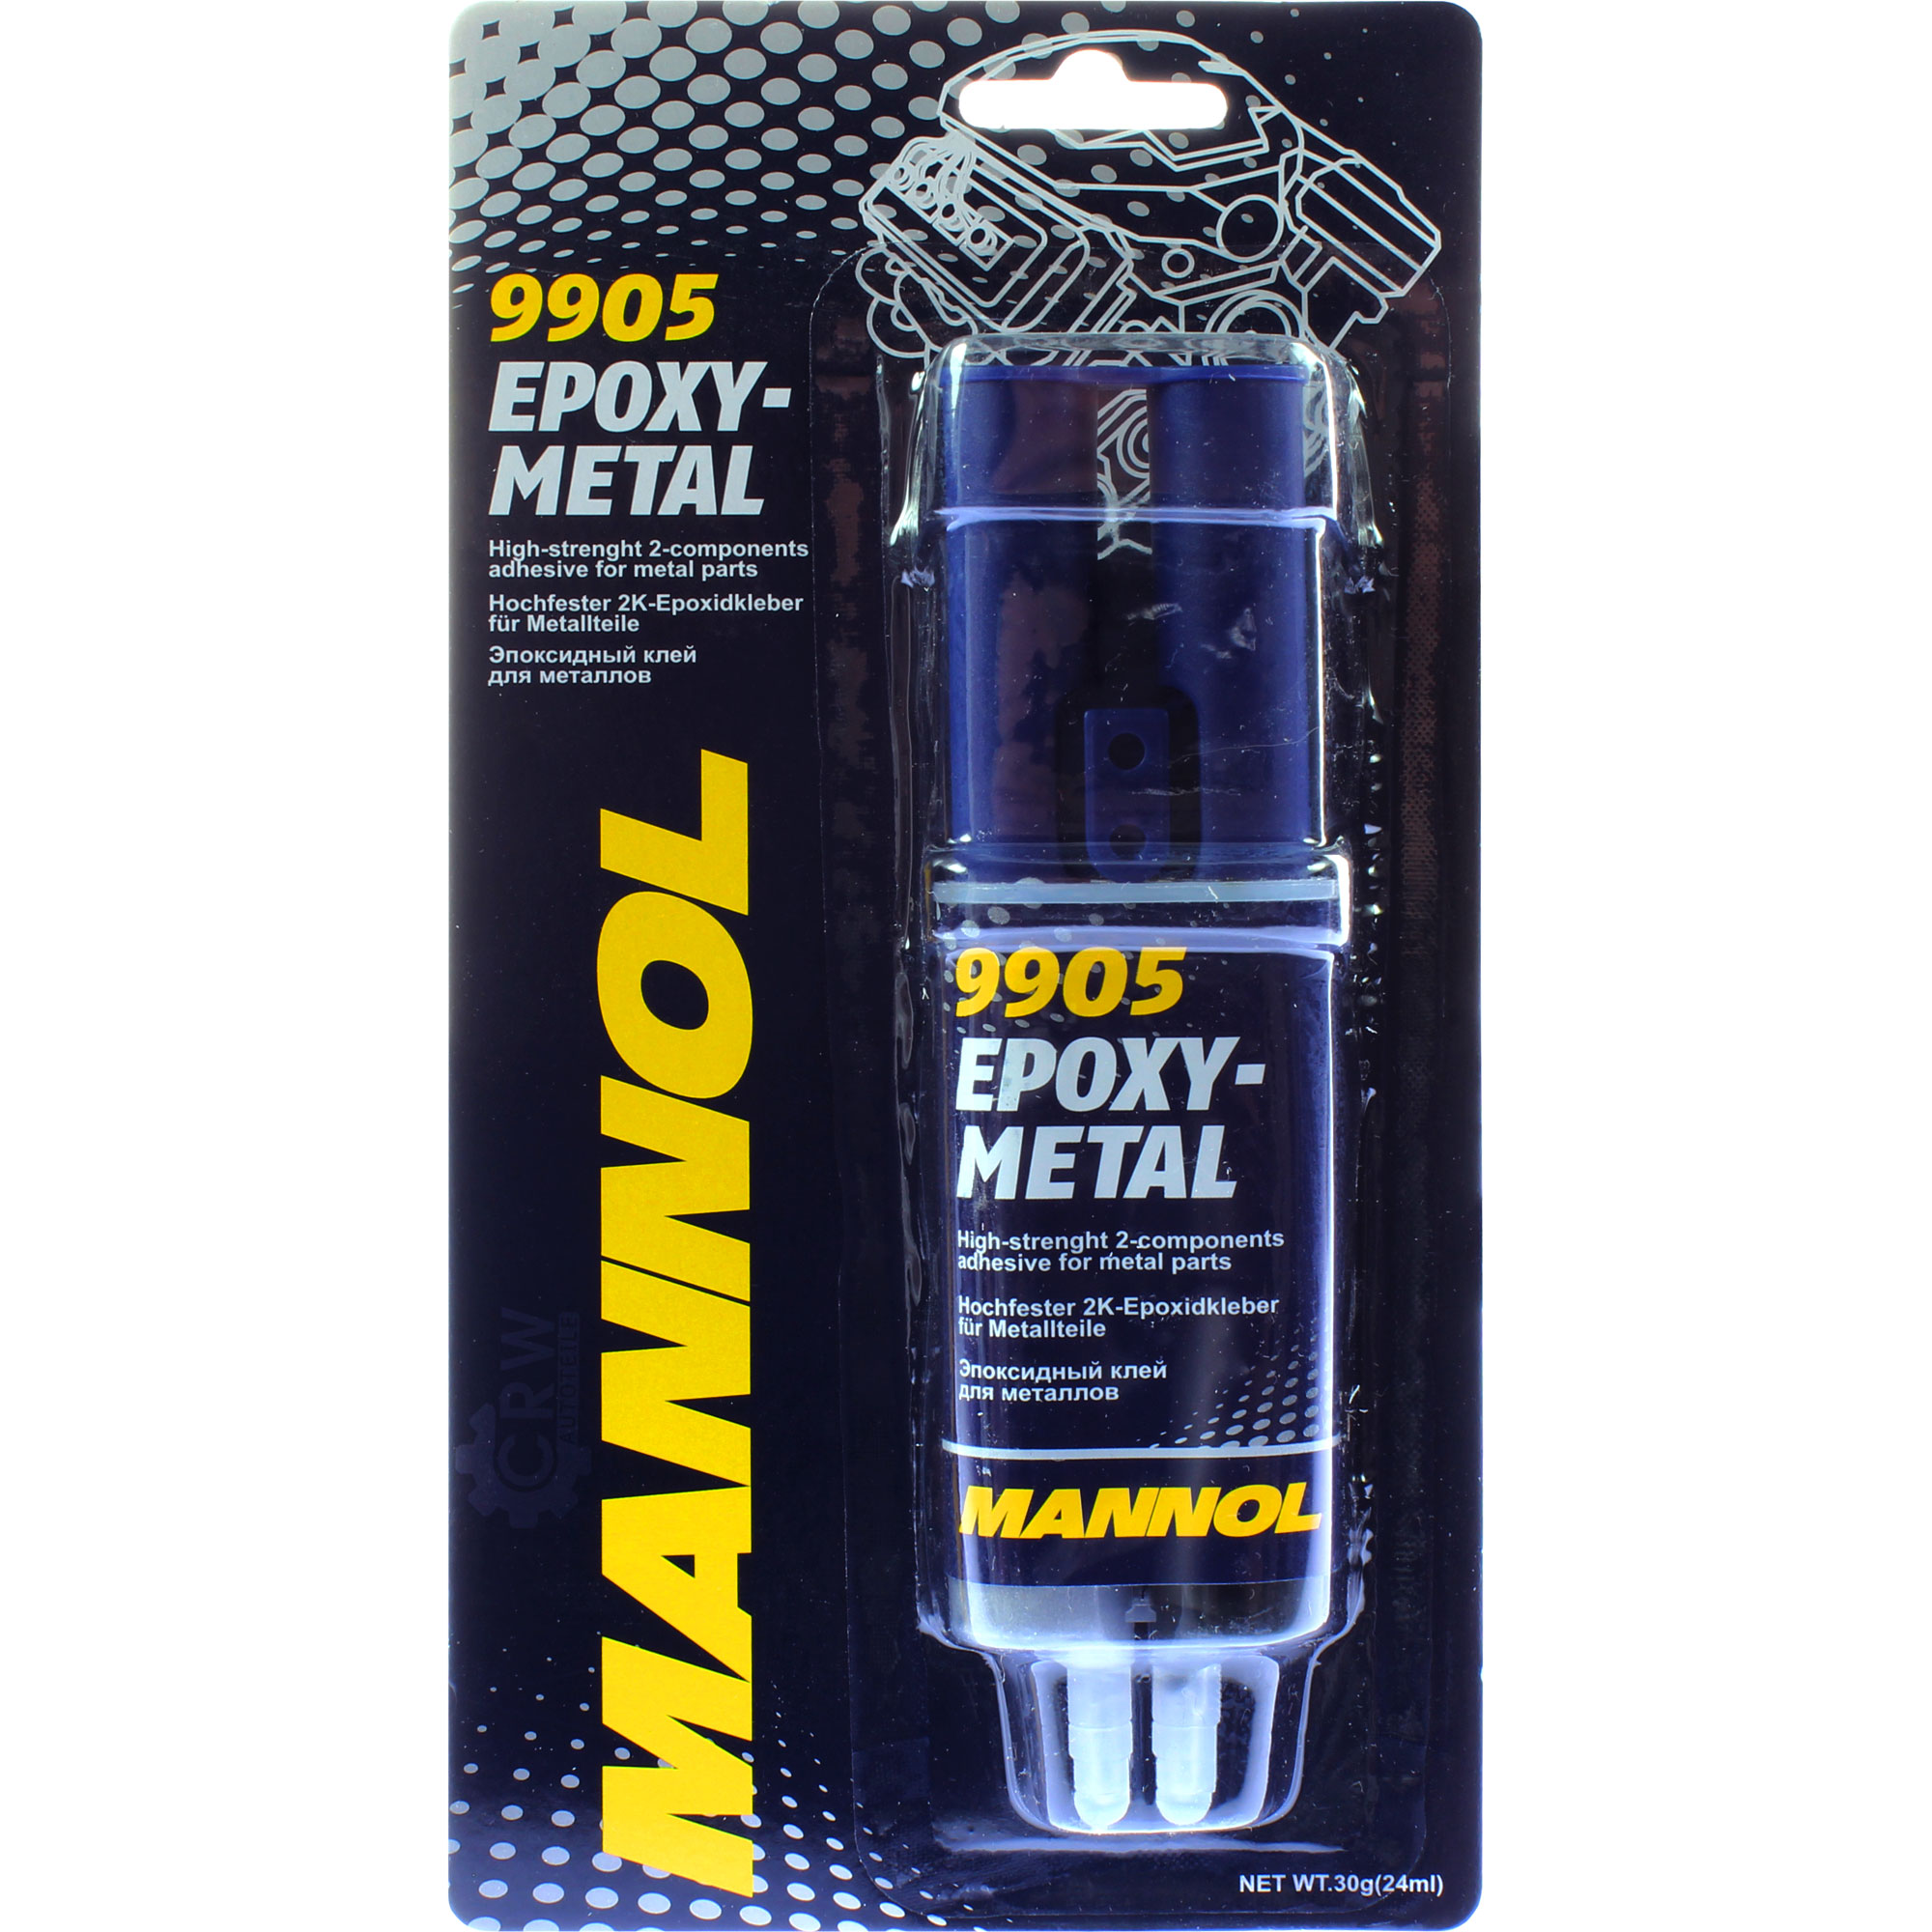 30g MANNOL Epoxi-Metall 2K Metallkleber Klebstoff Epoxyklebstoff